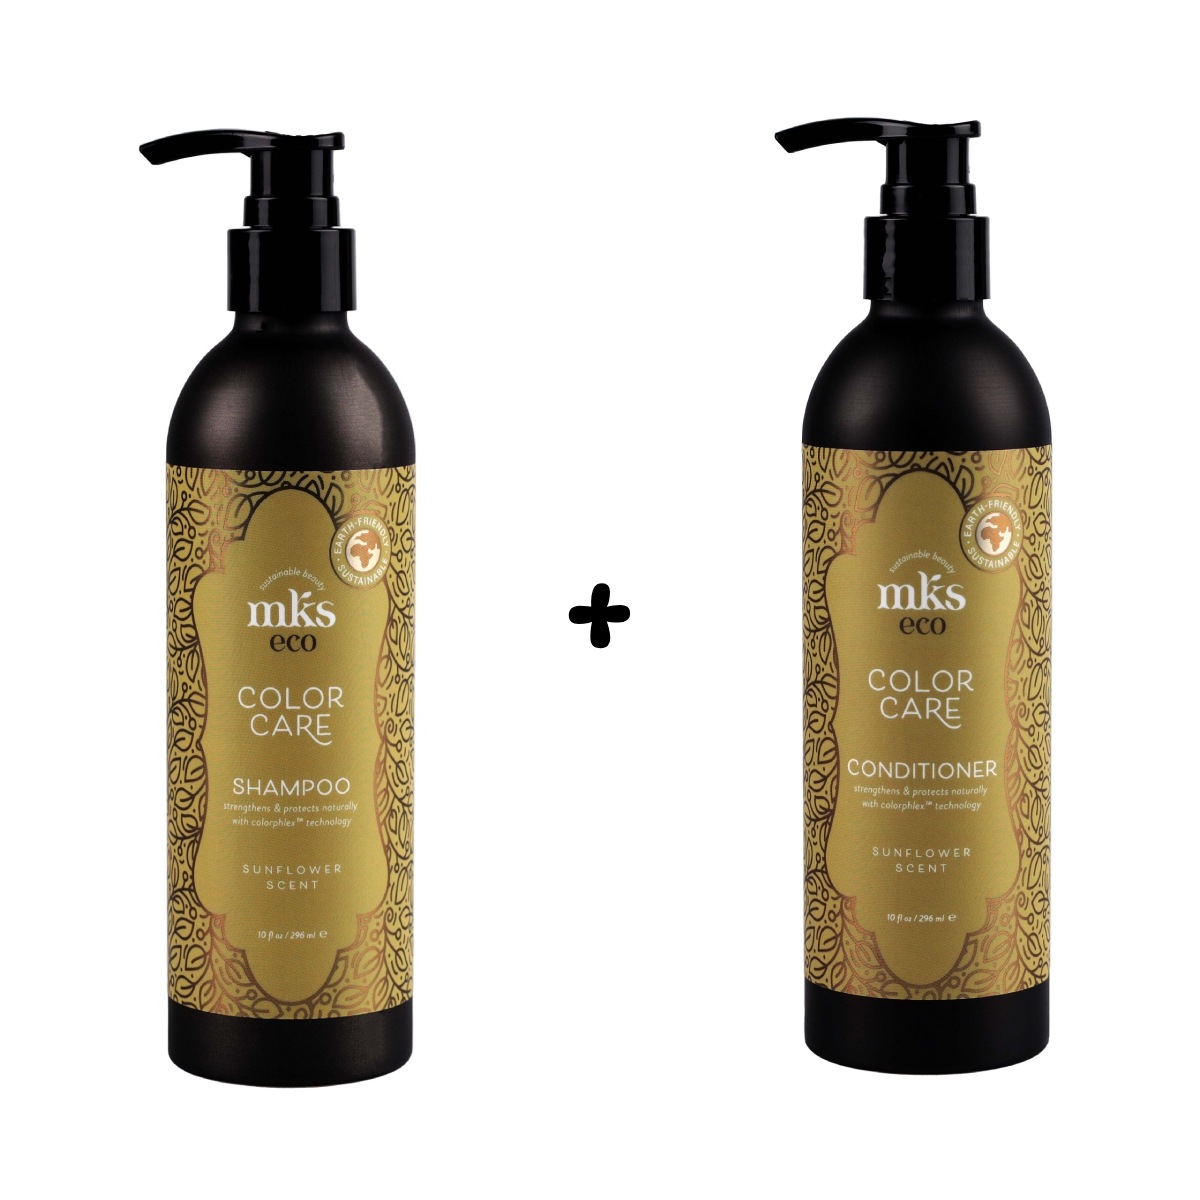 MKS eco Color Care Shampoo + Conditioner